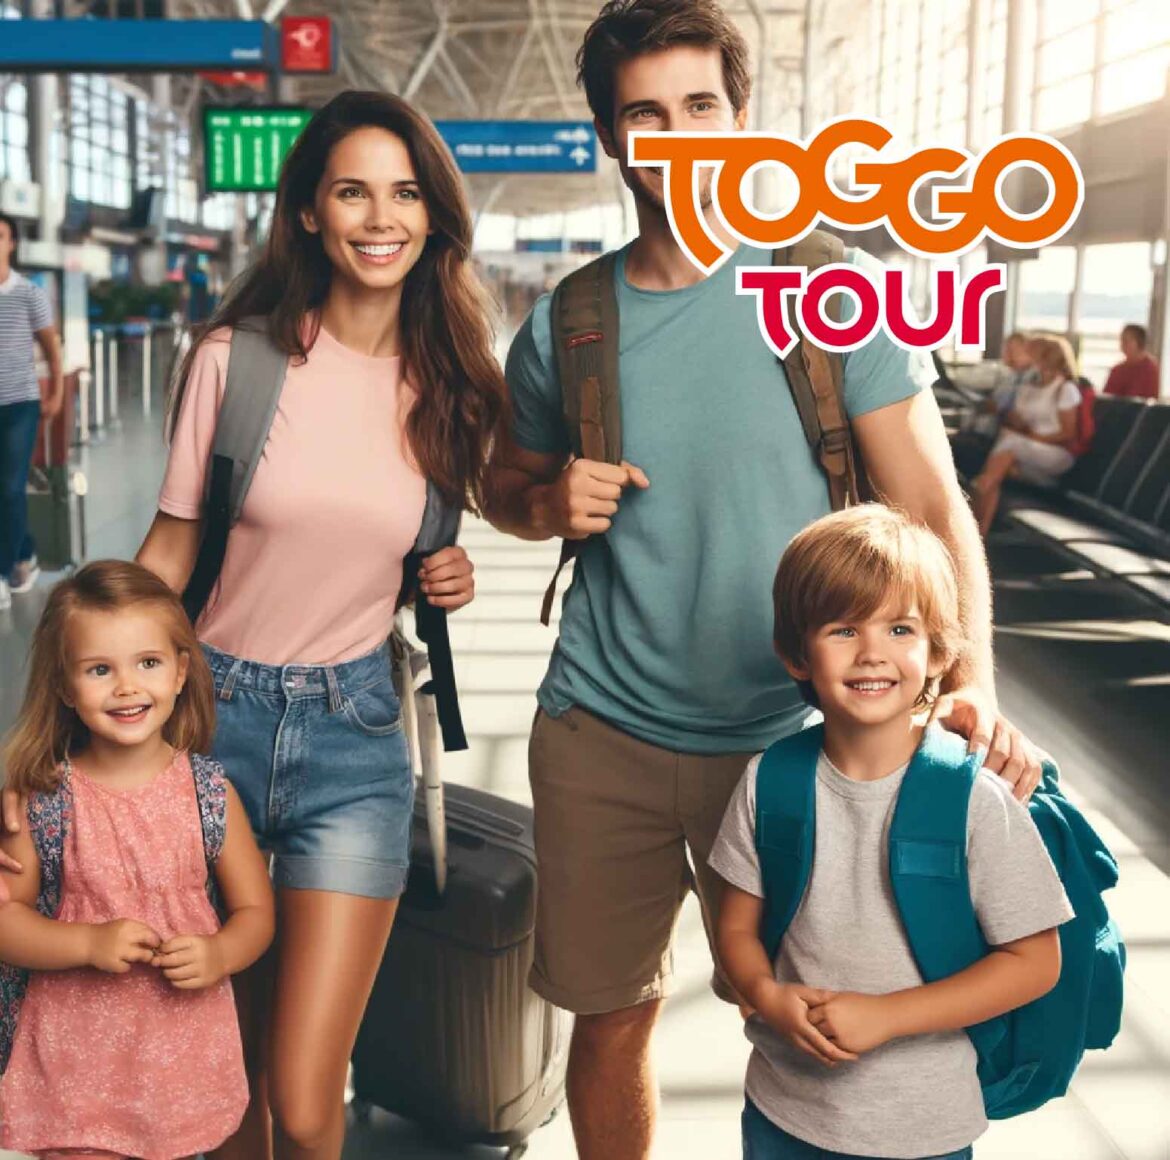 Toggo Tour: Ein Erlebnis für die ganze Familie